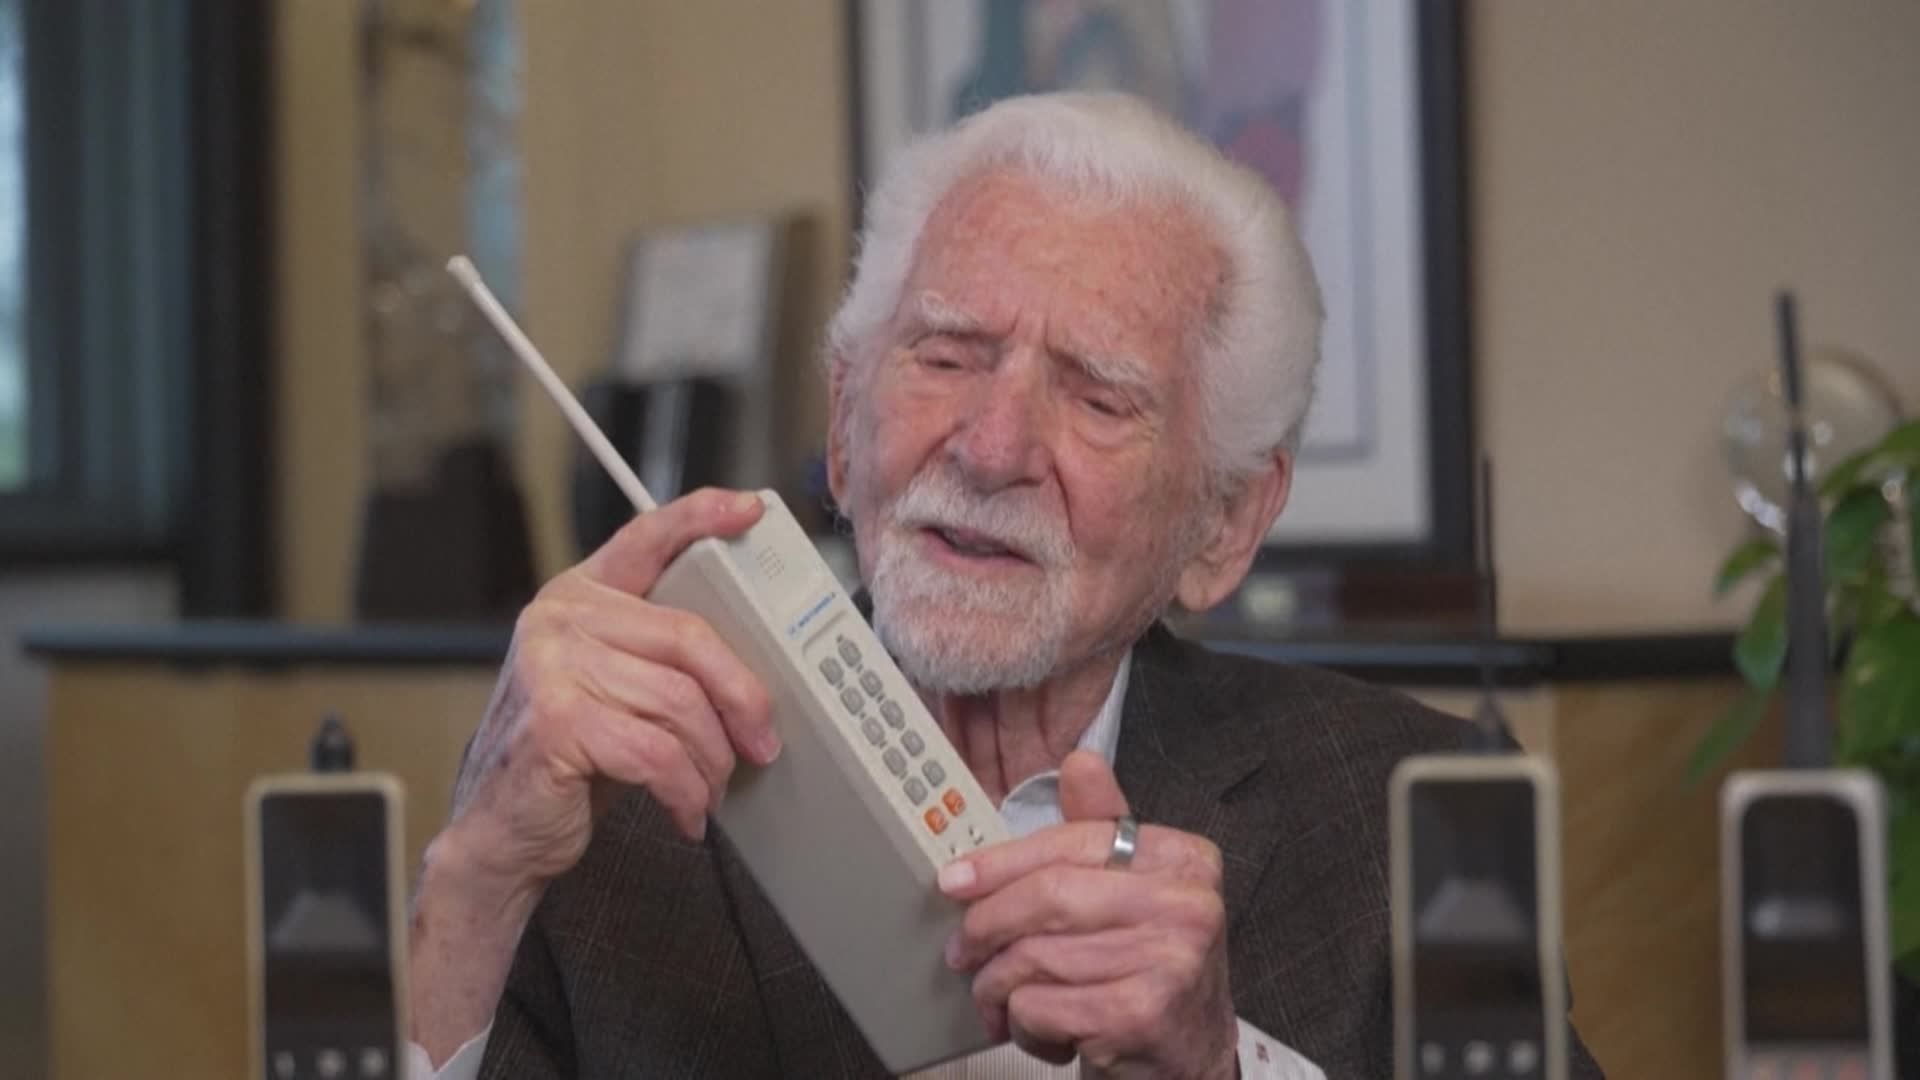 Le premier téléphone portable fête ses 30 ans